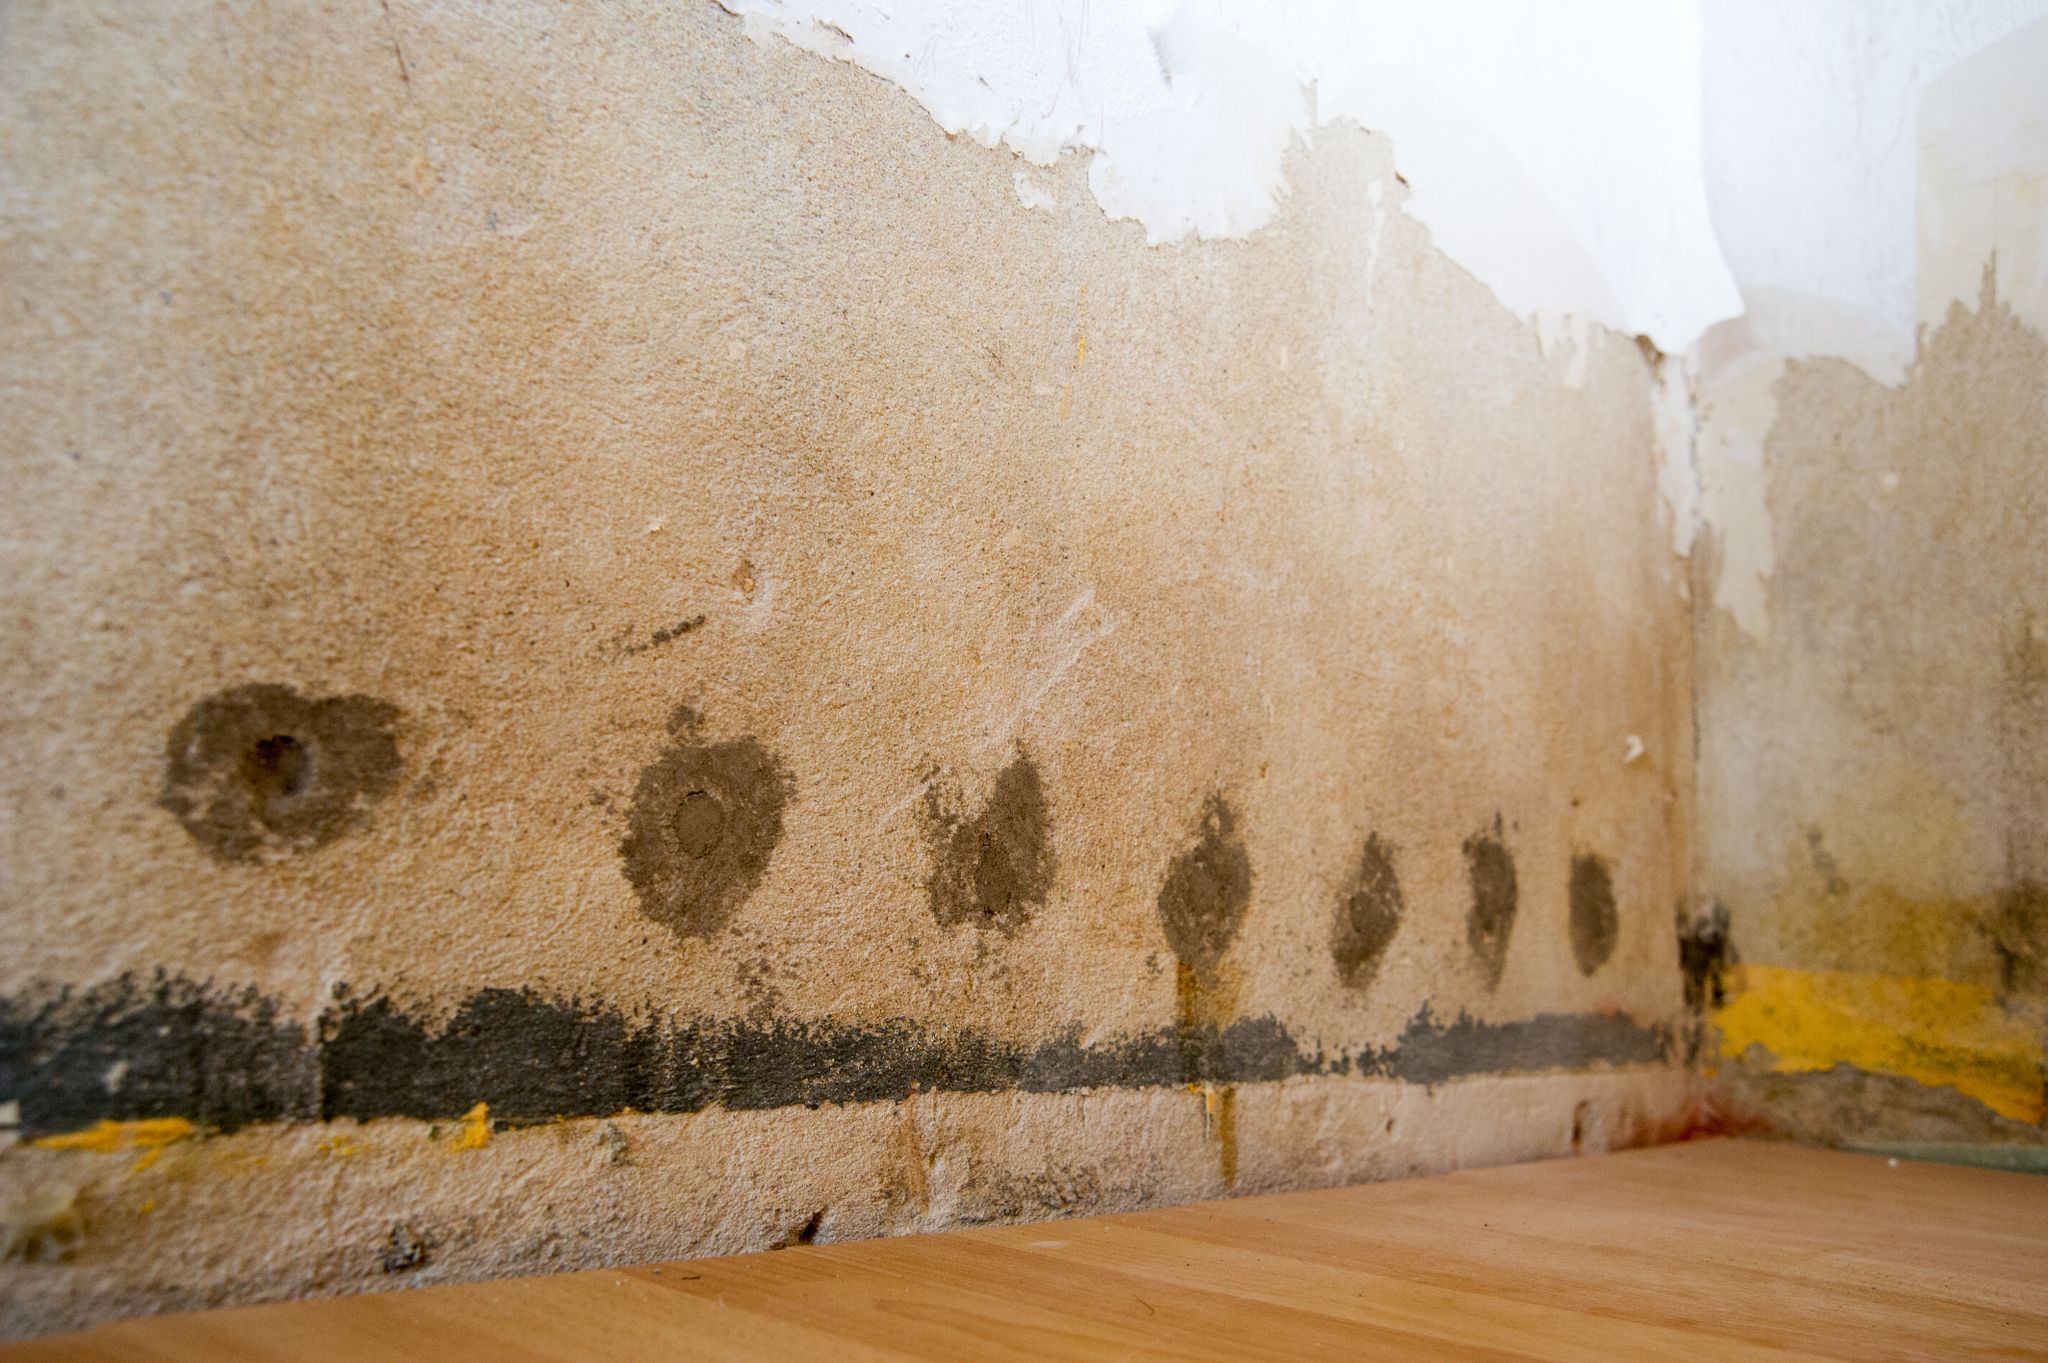 ▷ ¿Quieres quitar el moho de la pared con bicarbonato de sodio? ¡Sepa que empeorará el problema!